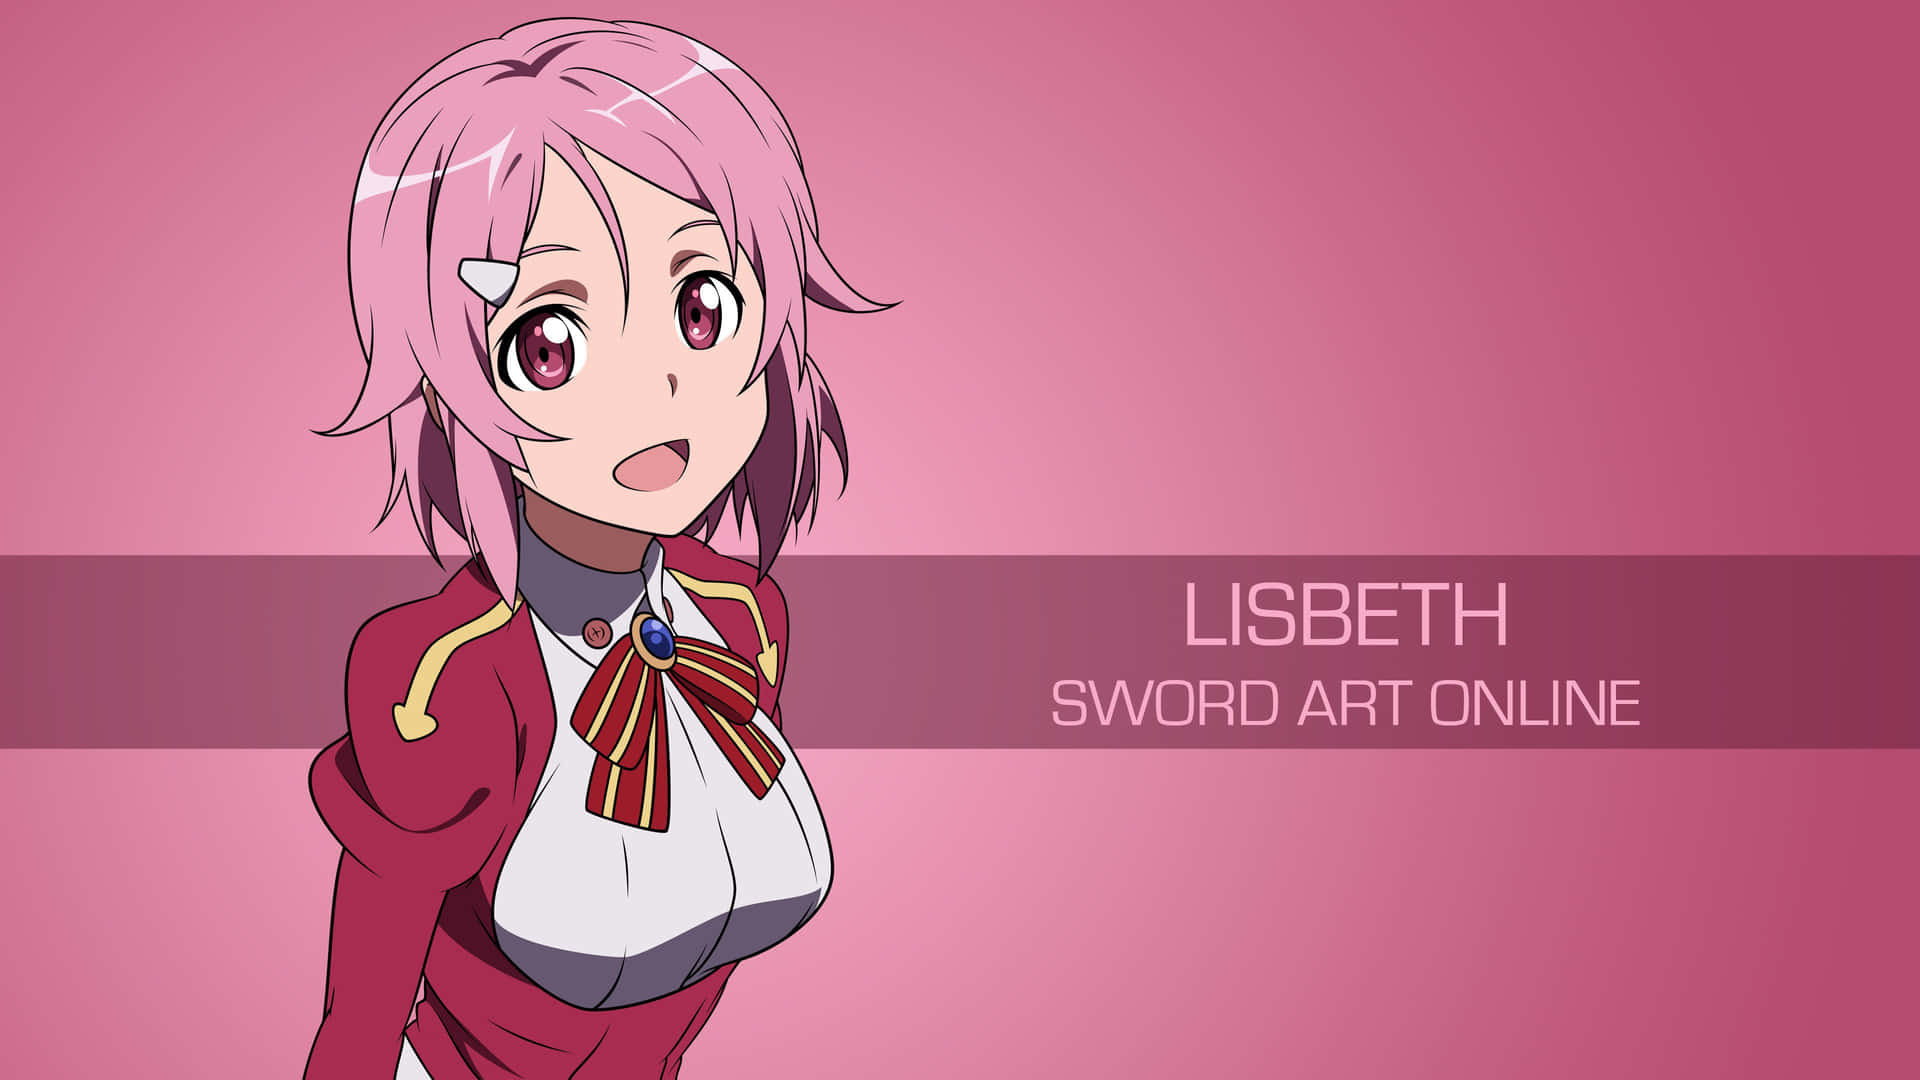 Kiritoansluter Sig Till Asuna, Leafa Och Klein För Att Utforska Världen I Sword Art Online